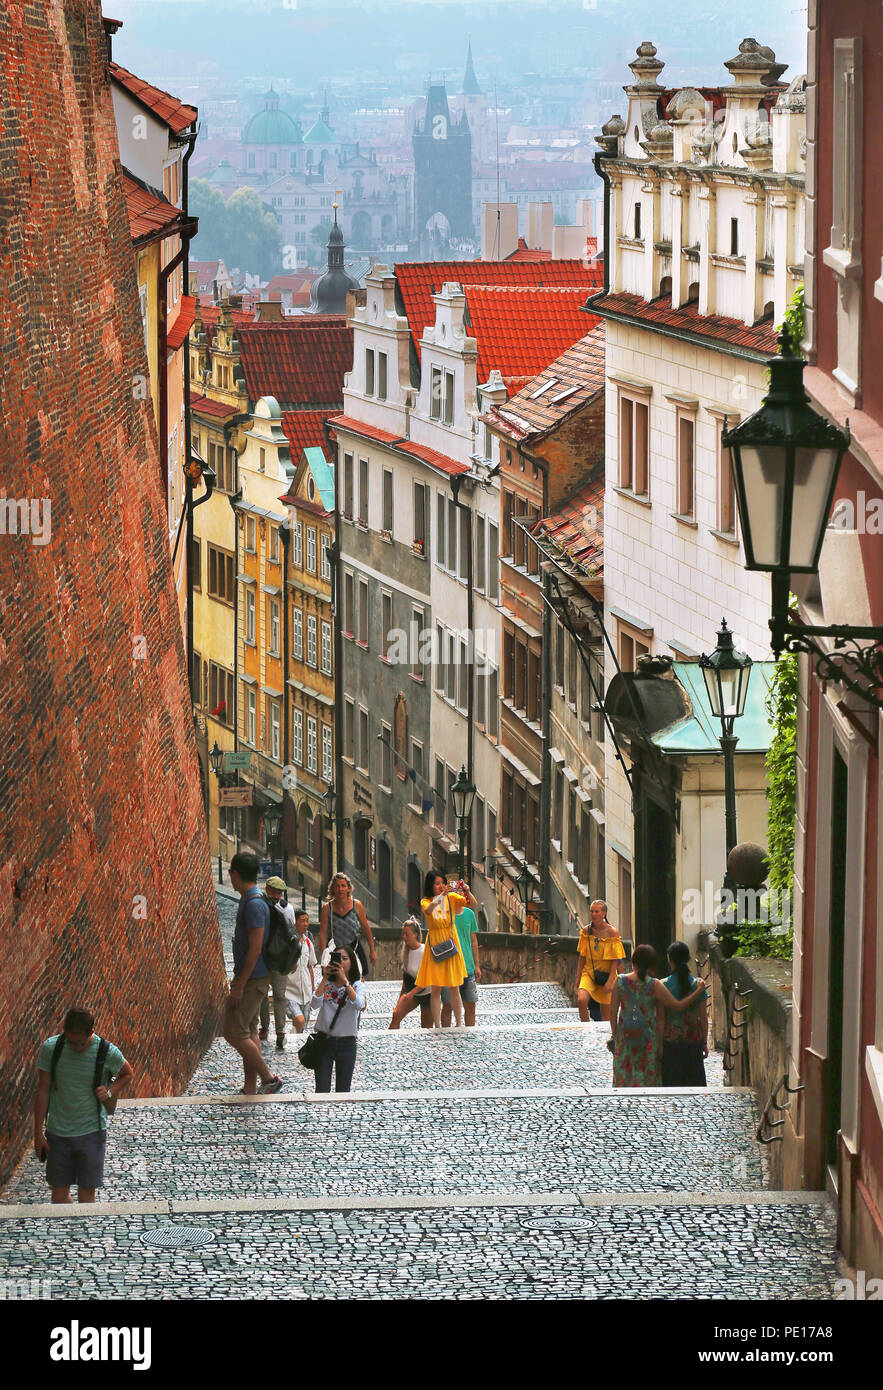 Prag, Tschechische Republik Jun 9, 2018: Eine kleine Straße im Stadtteil Kleinseite (Mala Strana), führt zu der Prager Burg (Prazsky Hrad) Stockfoto